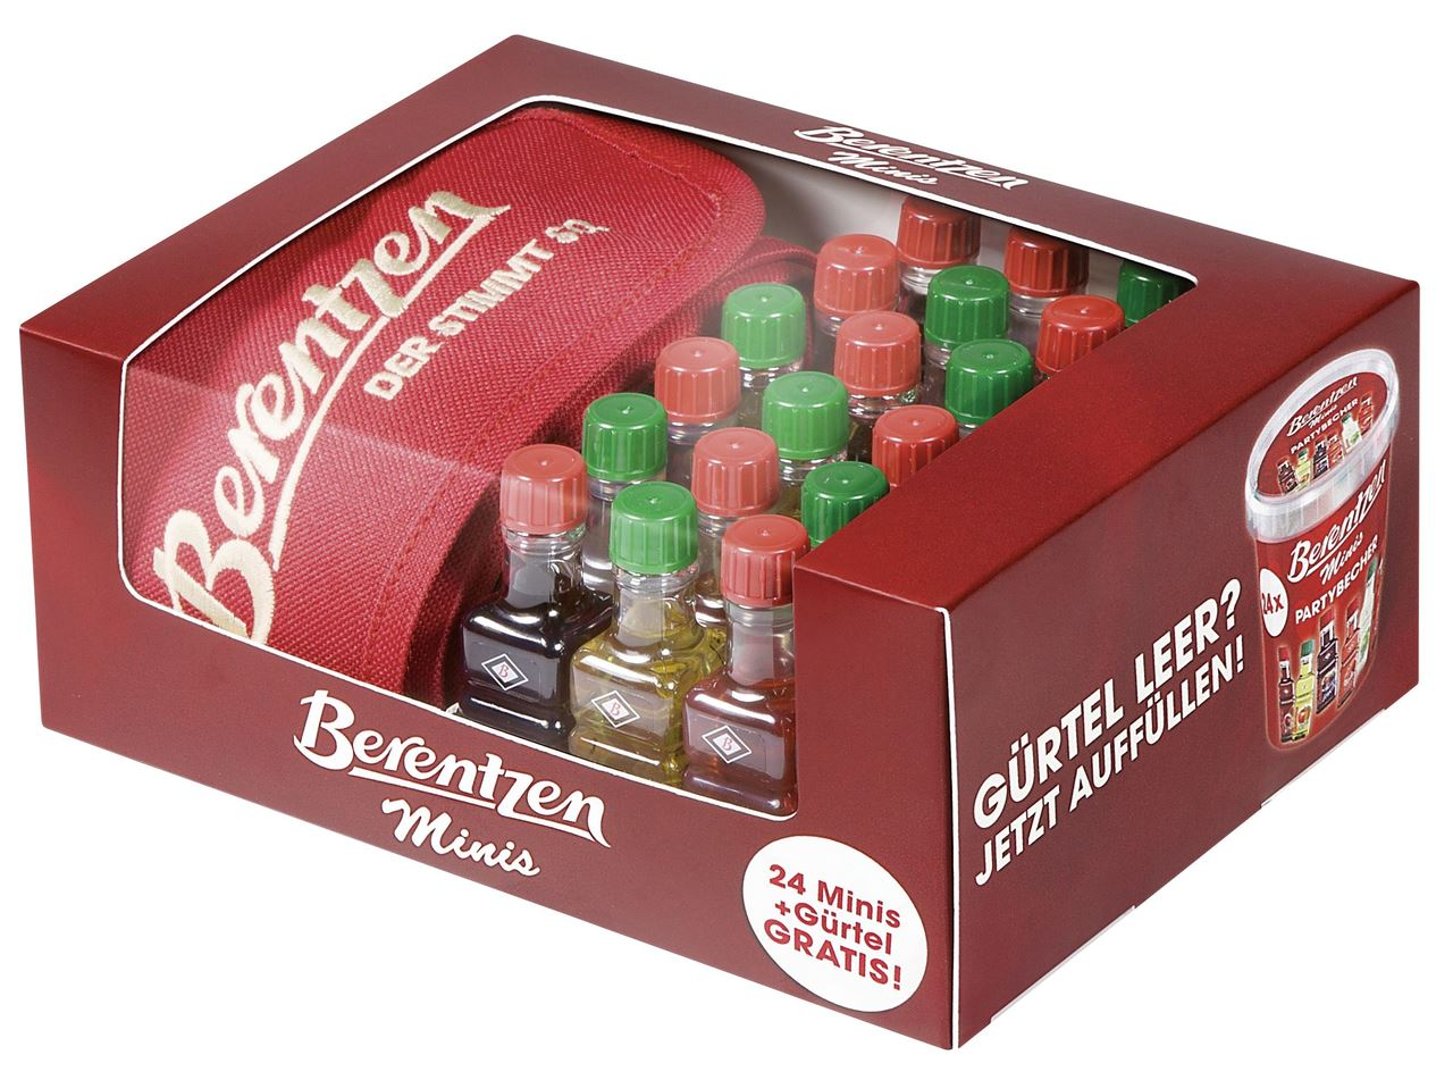 Berentzen - Fruchtlikör Minis sortiert im Gürtel 16,5 % Vol. 24 Flaschen à 20 ml - 480 ml Schachtel